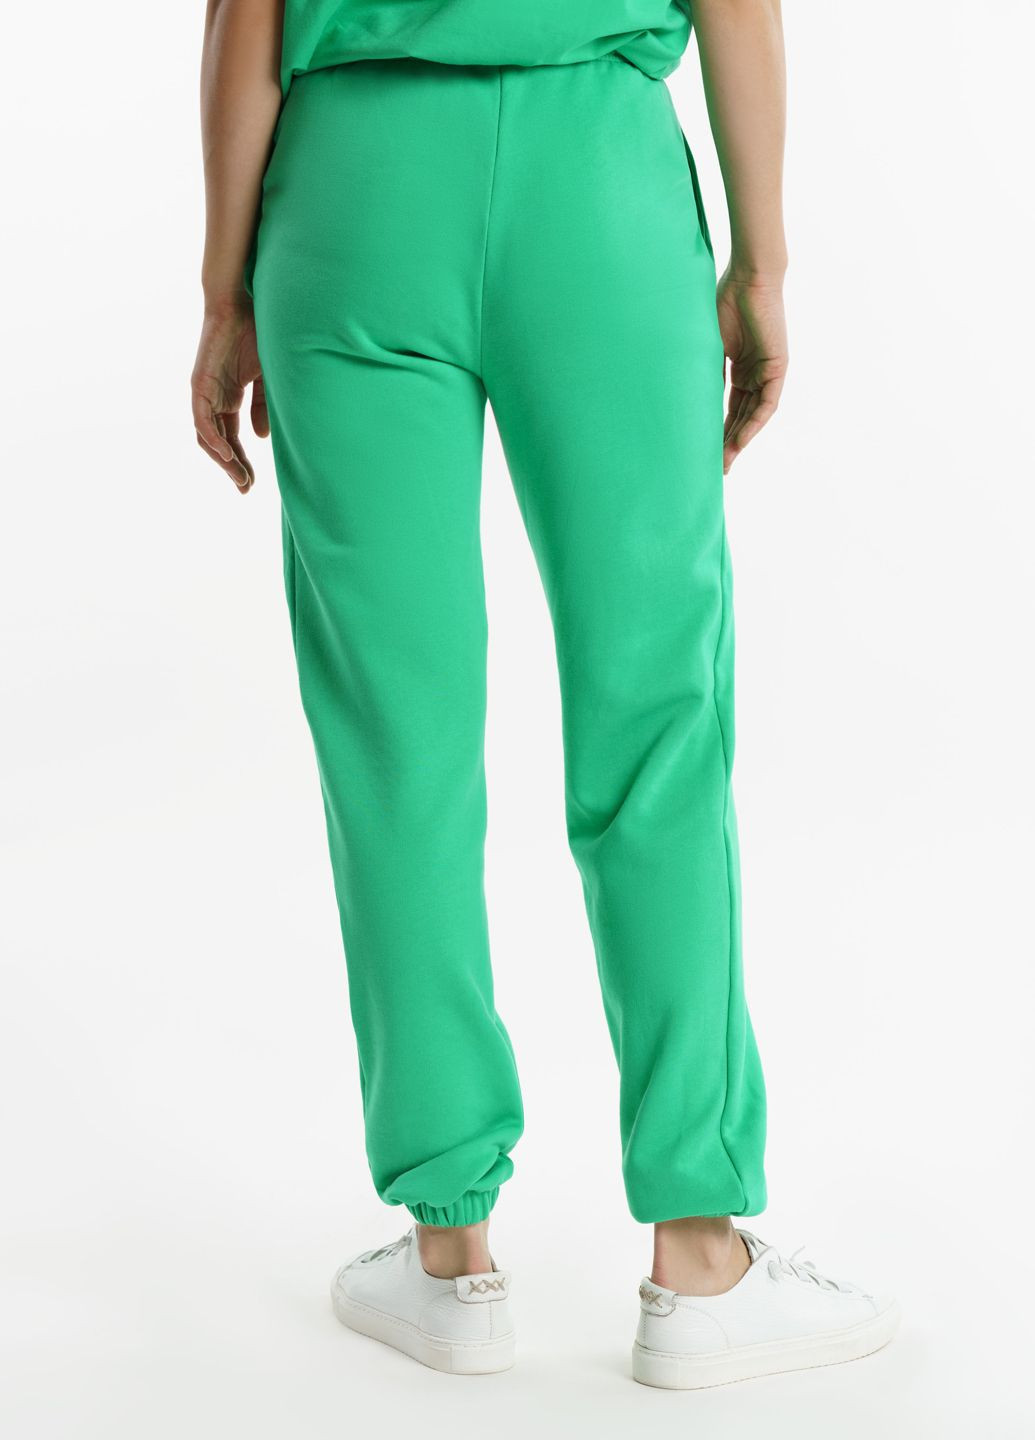 Спортивные брюки женские Freedom зеленые Arber sportpants w6 (282841890)